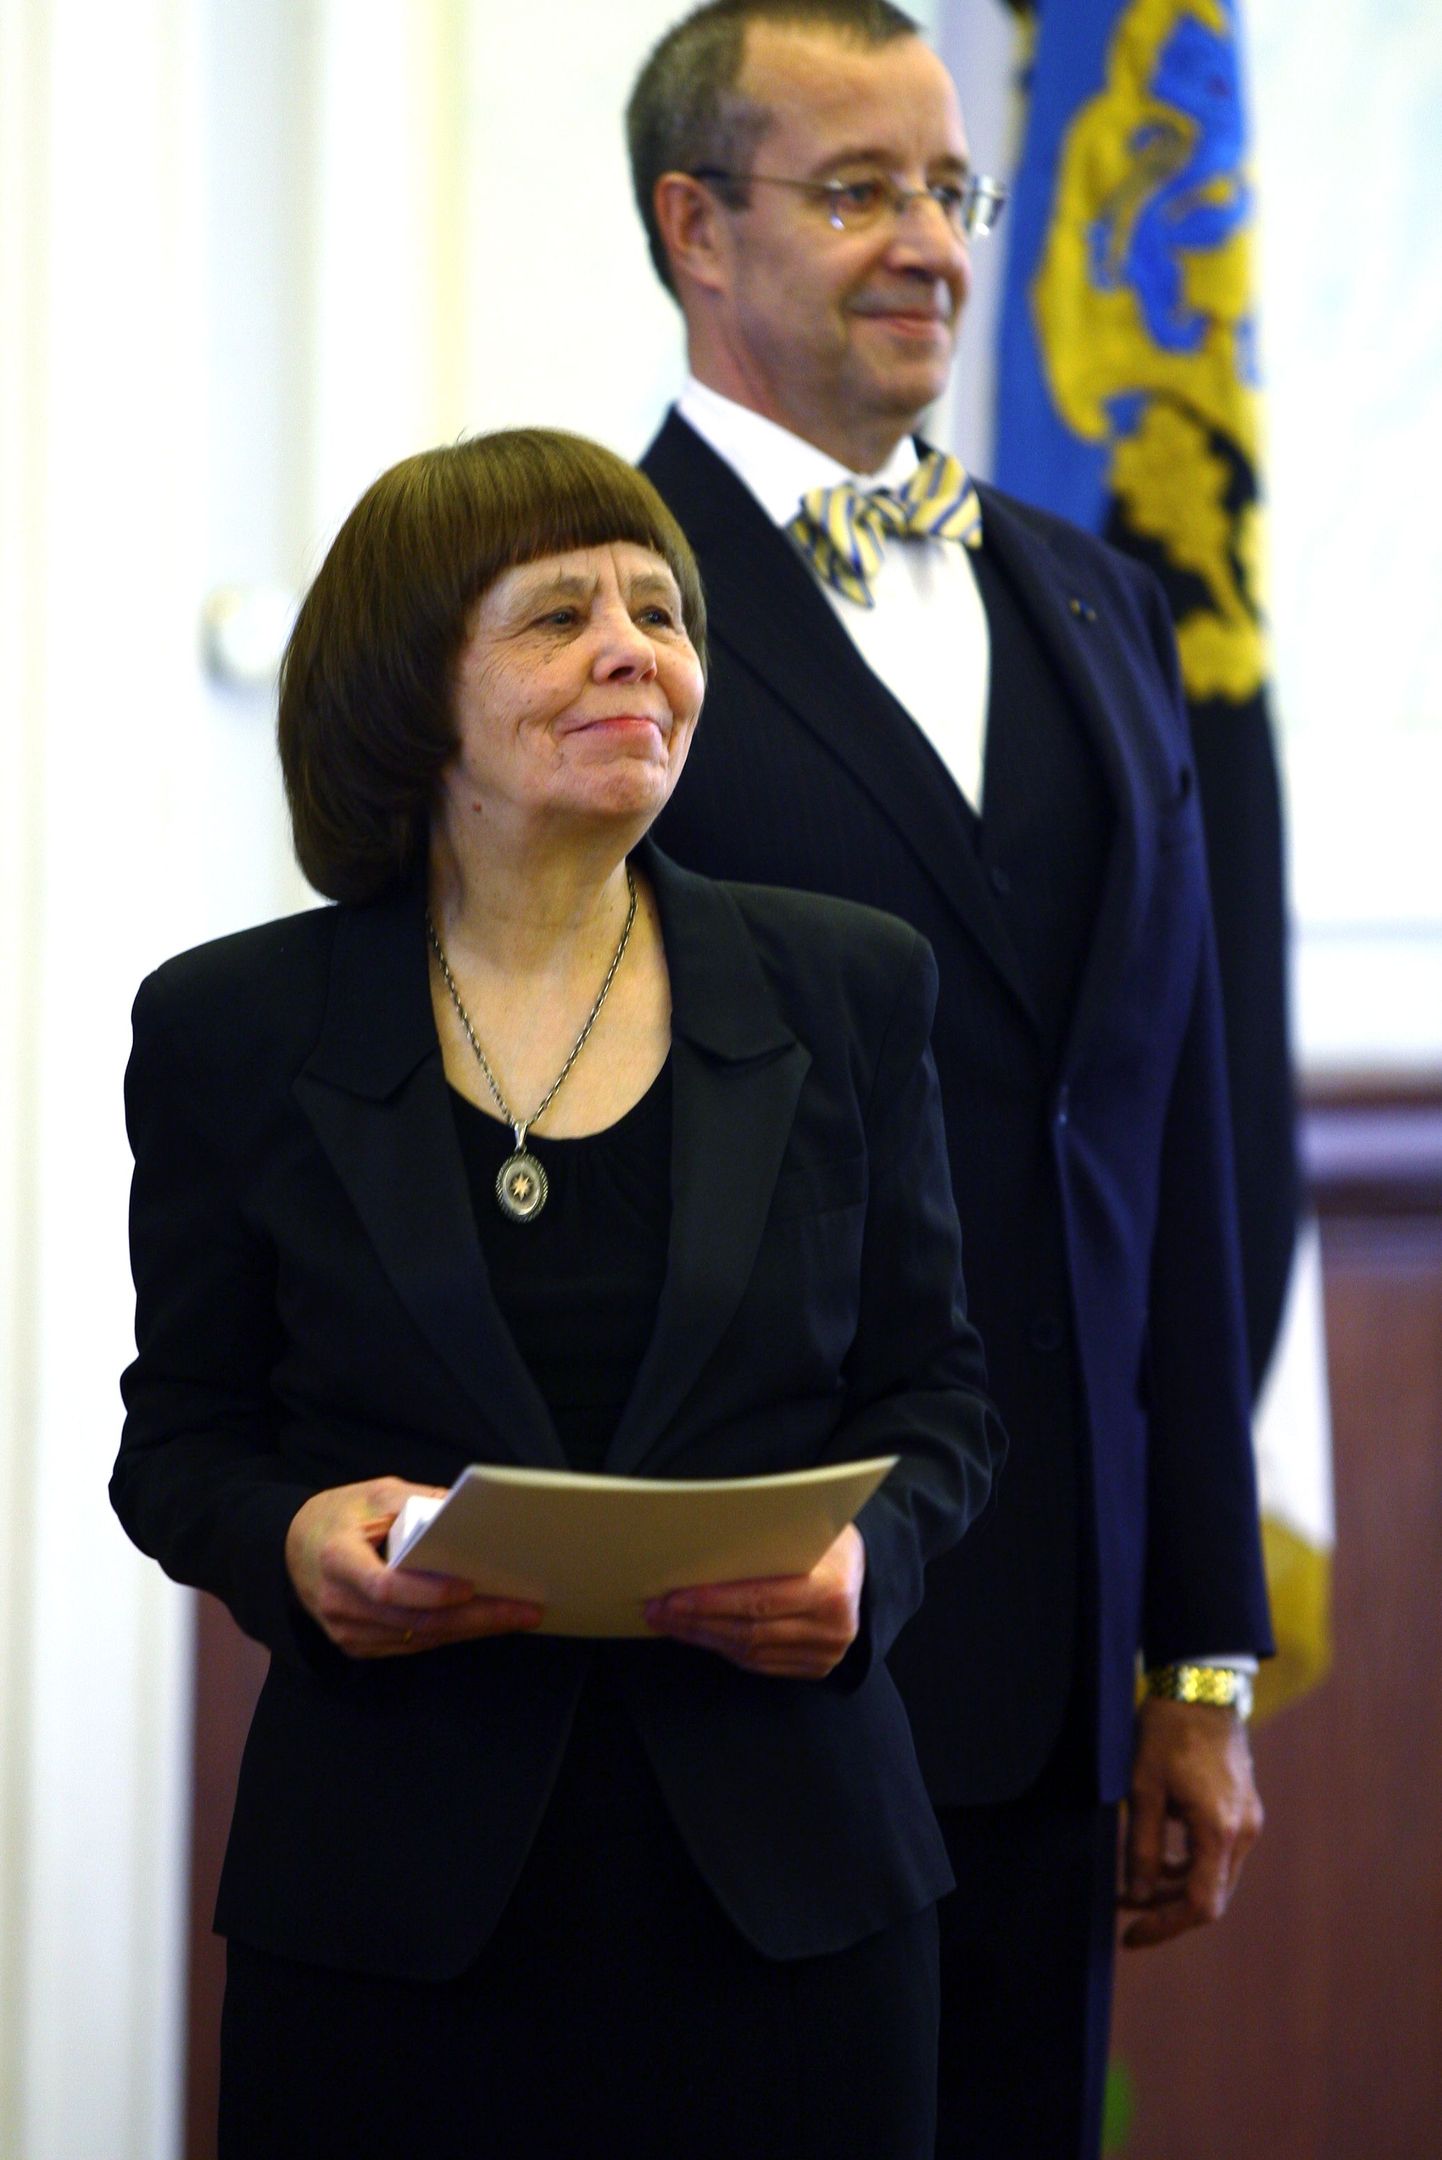 Pedagoogikateadlane, Tallinna Ülikooli emeriitprofessor Viive-Riina Ruus sai Valgetähe IV klassi ordeni.